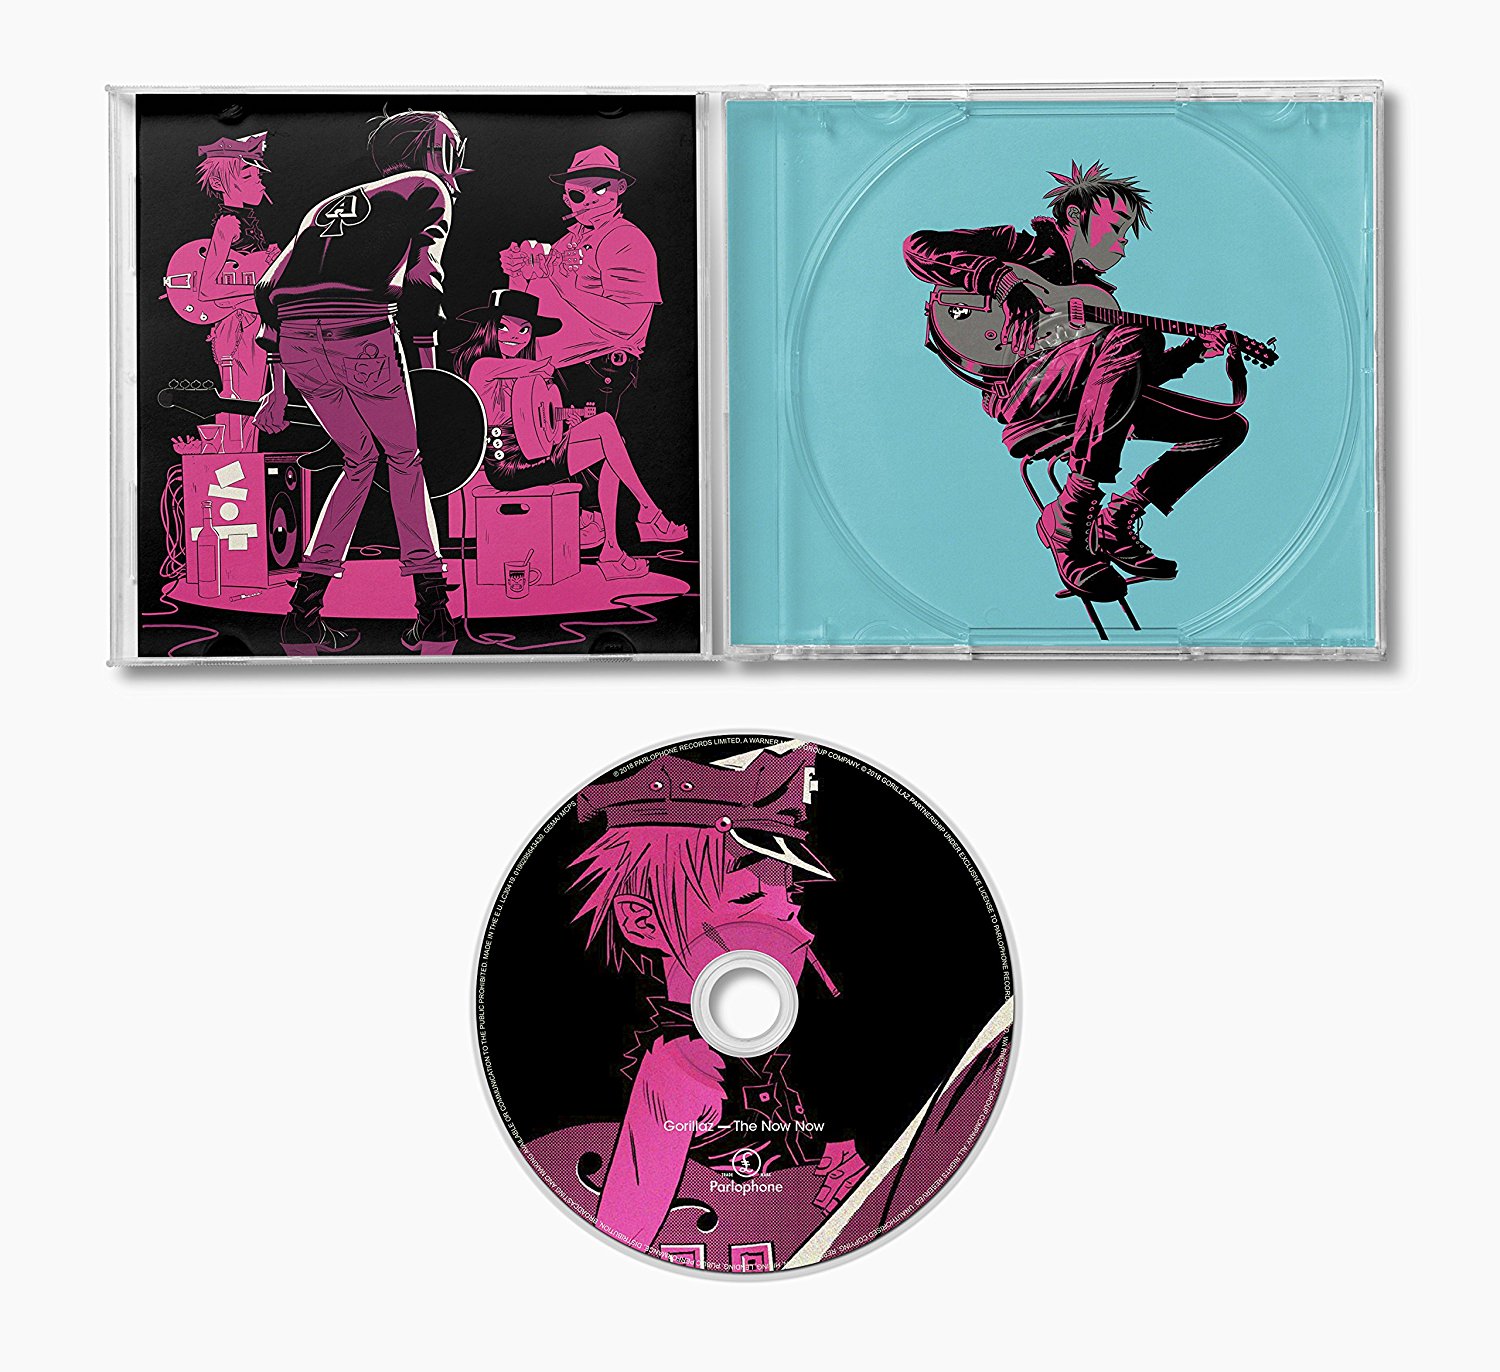 Группа now now. Gorillaz обложка. Gorillaz обложки альбомов. CD диск альбом Gorillaz. Gorillaz обложка диска.